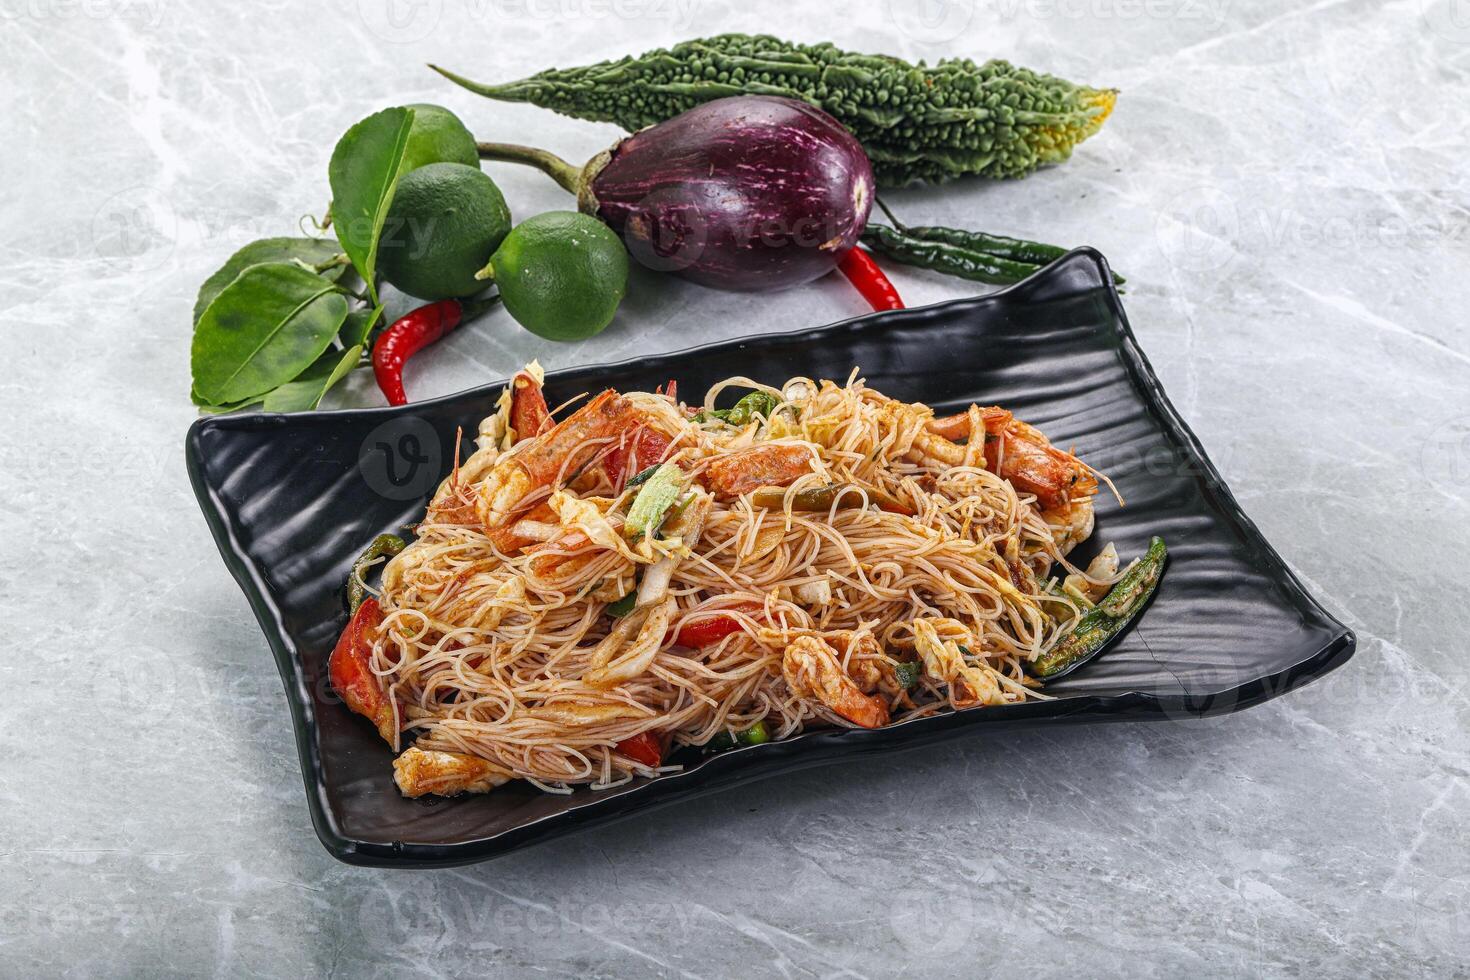 Thais pittig vermicelli salade met garnalen foto